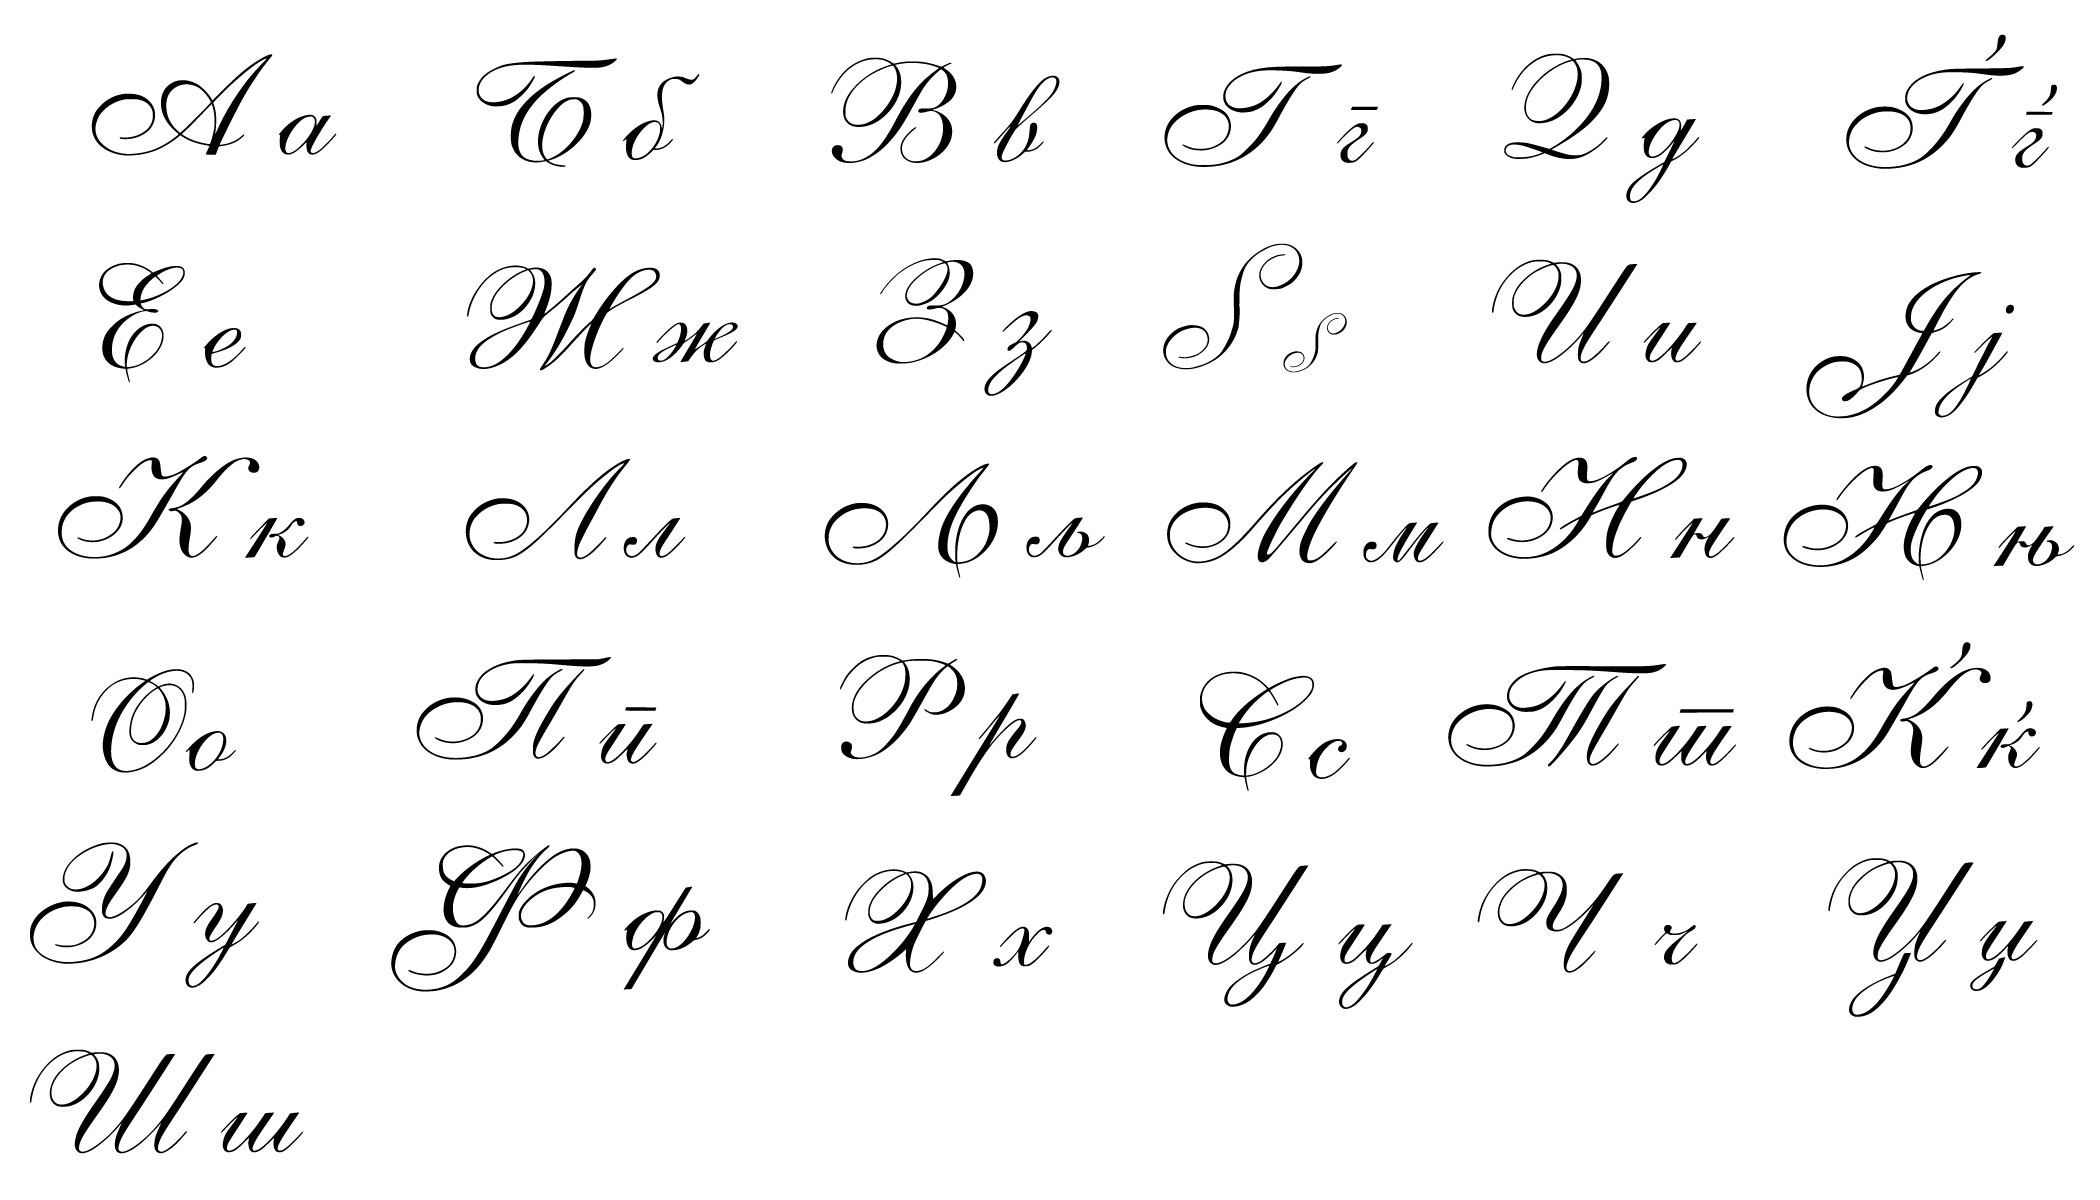 Macedonian handwritten script